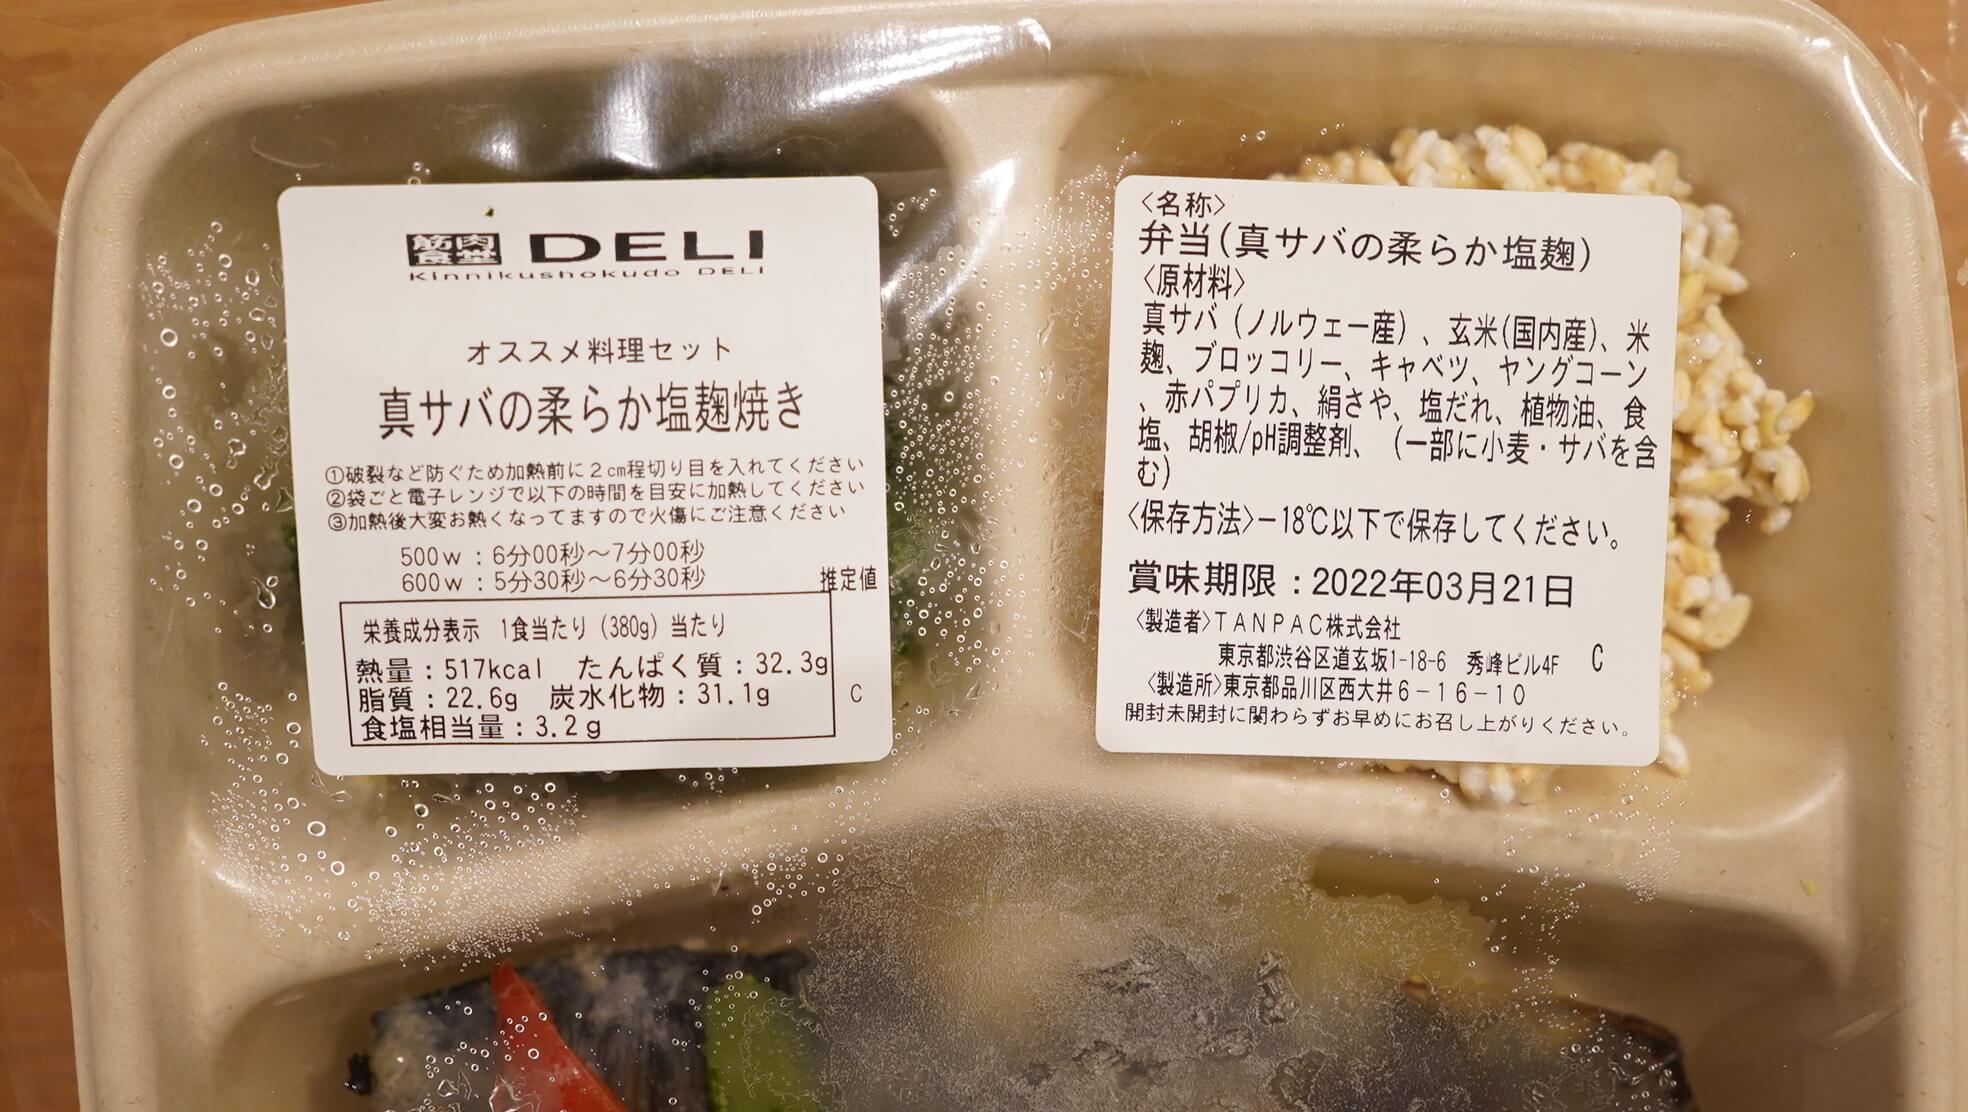 筋肉食堂DELIの冷凍宅配弁当「真サバの柔らか塩麹焼き」の栄養成分表の写真